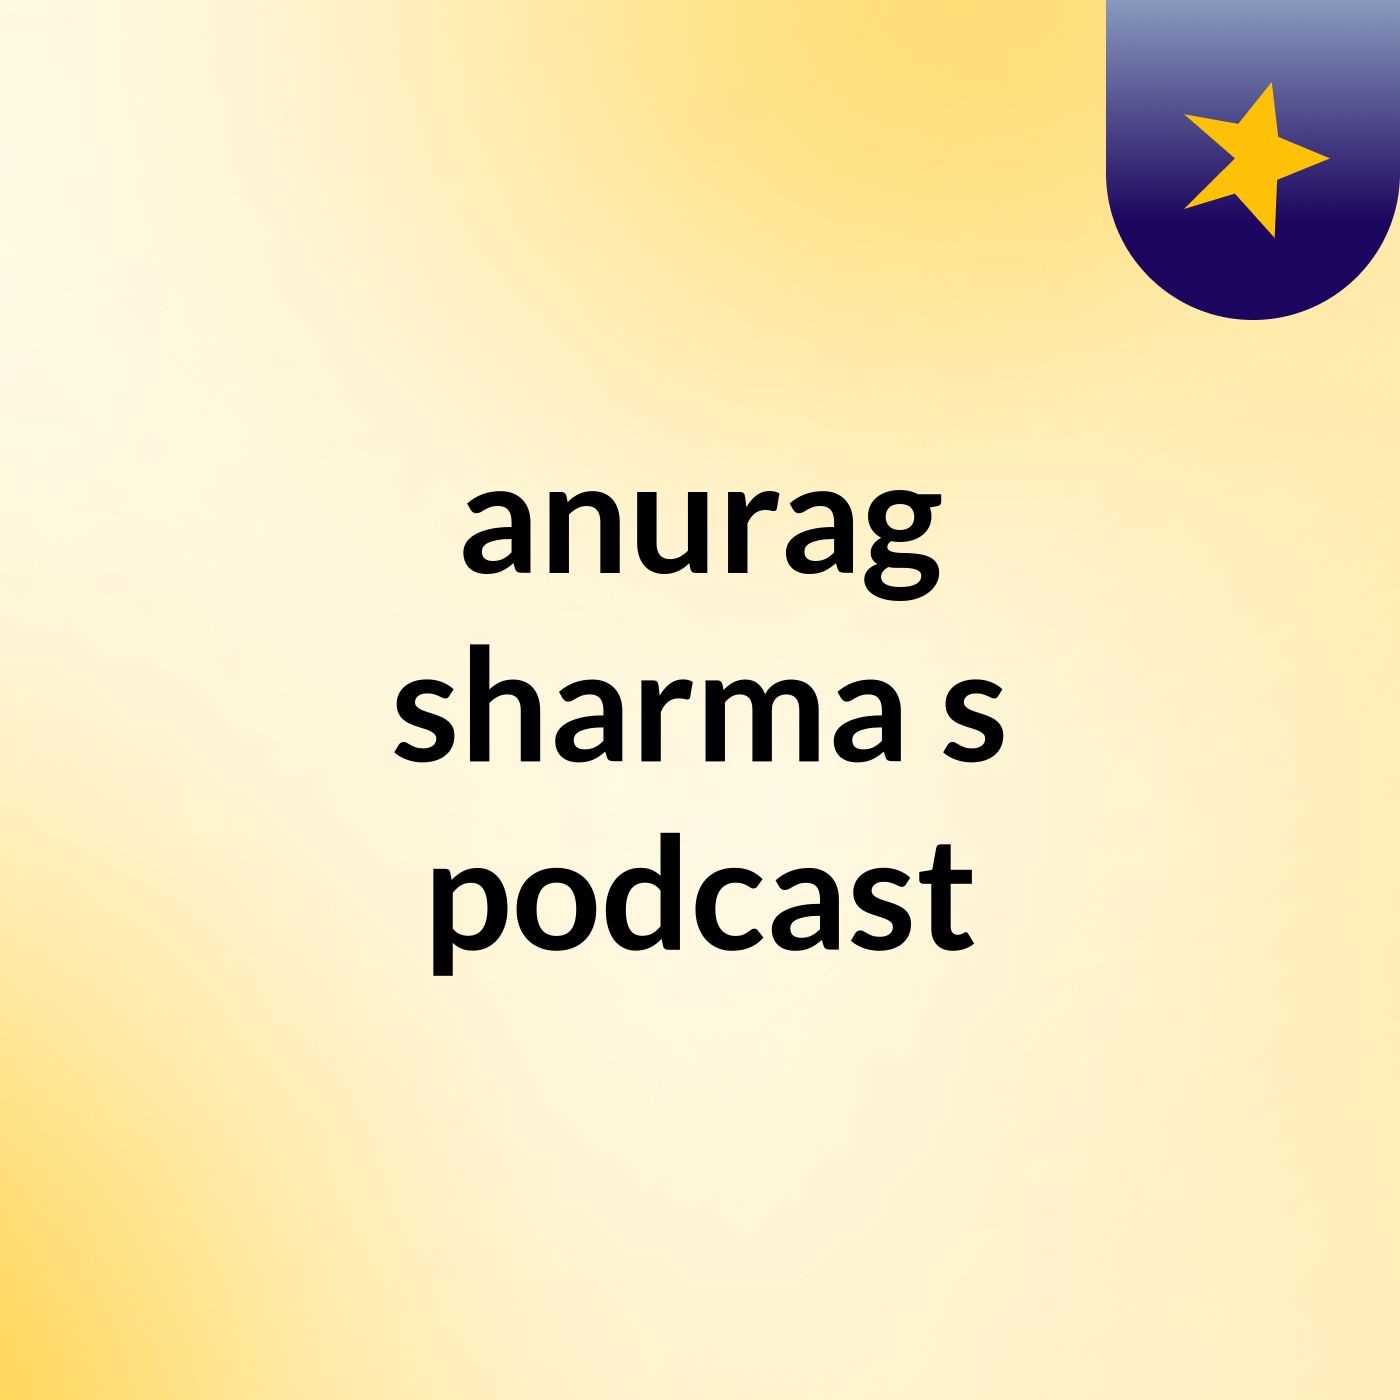 anurag sharma's podcast